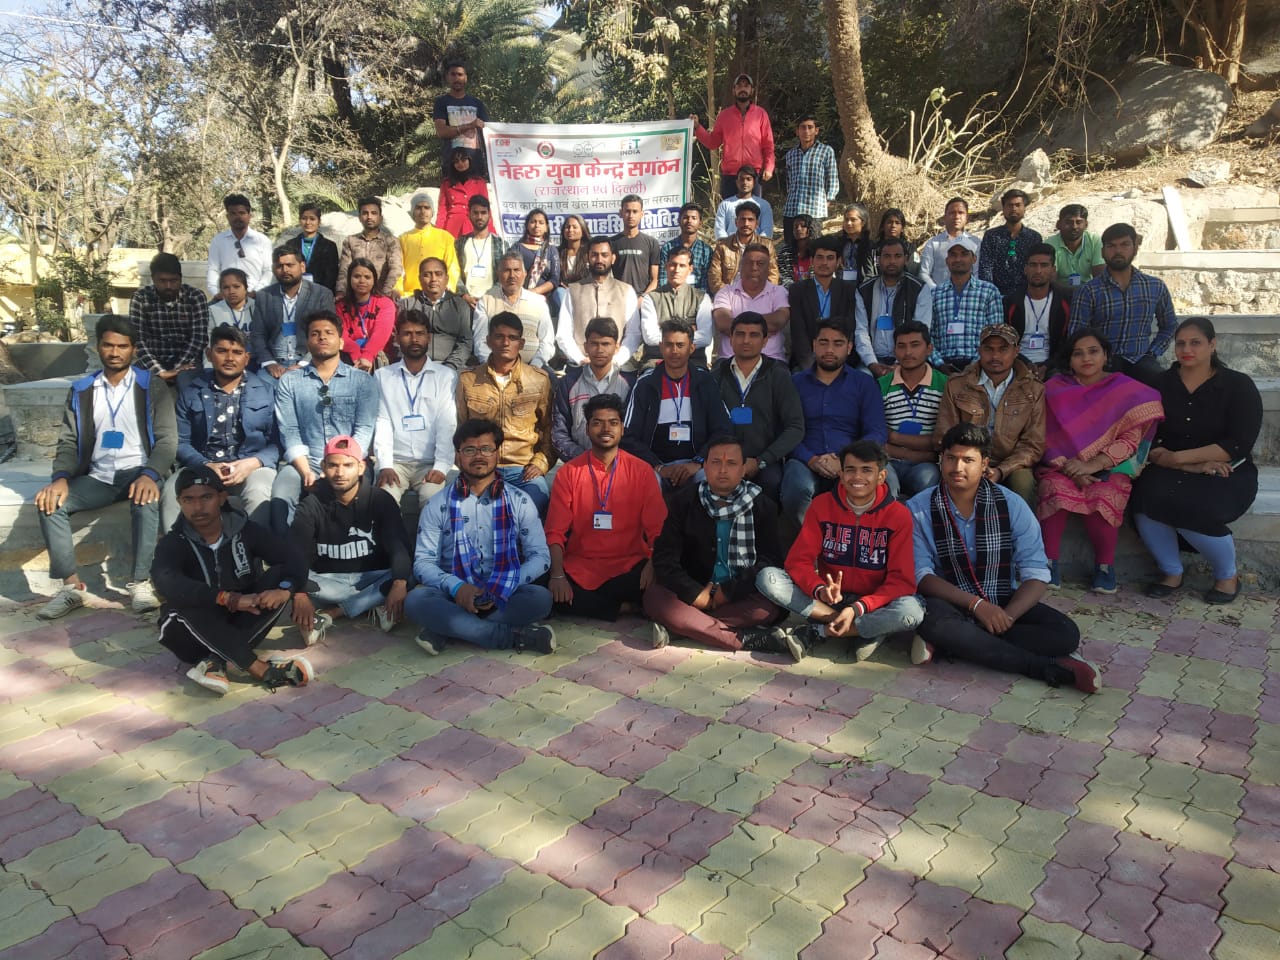 नेहरू युवा केंद्र के कार्यक्रम उनके लक्ष्य प्राप्ति में मददगार साबित होने के साथ उनको आगे बढ़ने के लिए बड़ा मंच प्रदान करते हैं: राजेन्द्र प्रसाद सैन